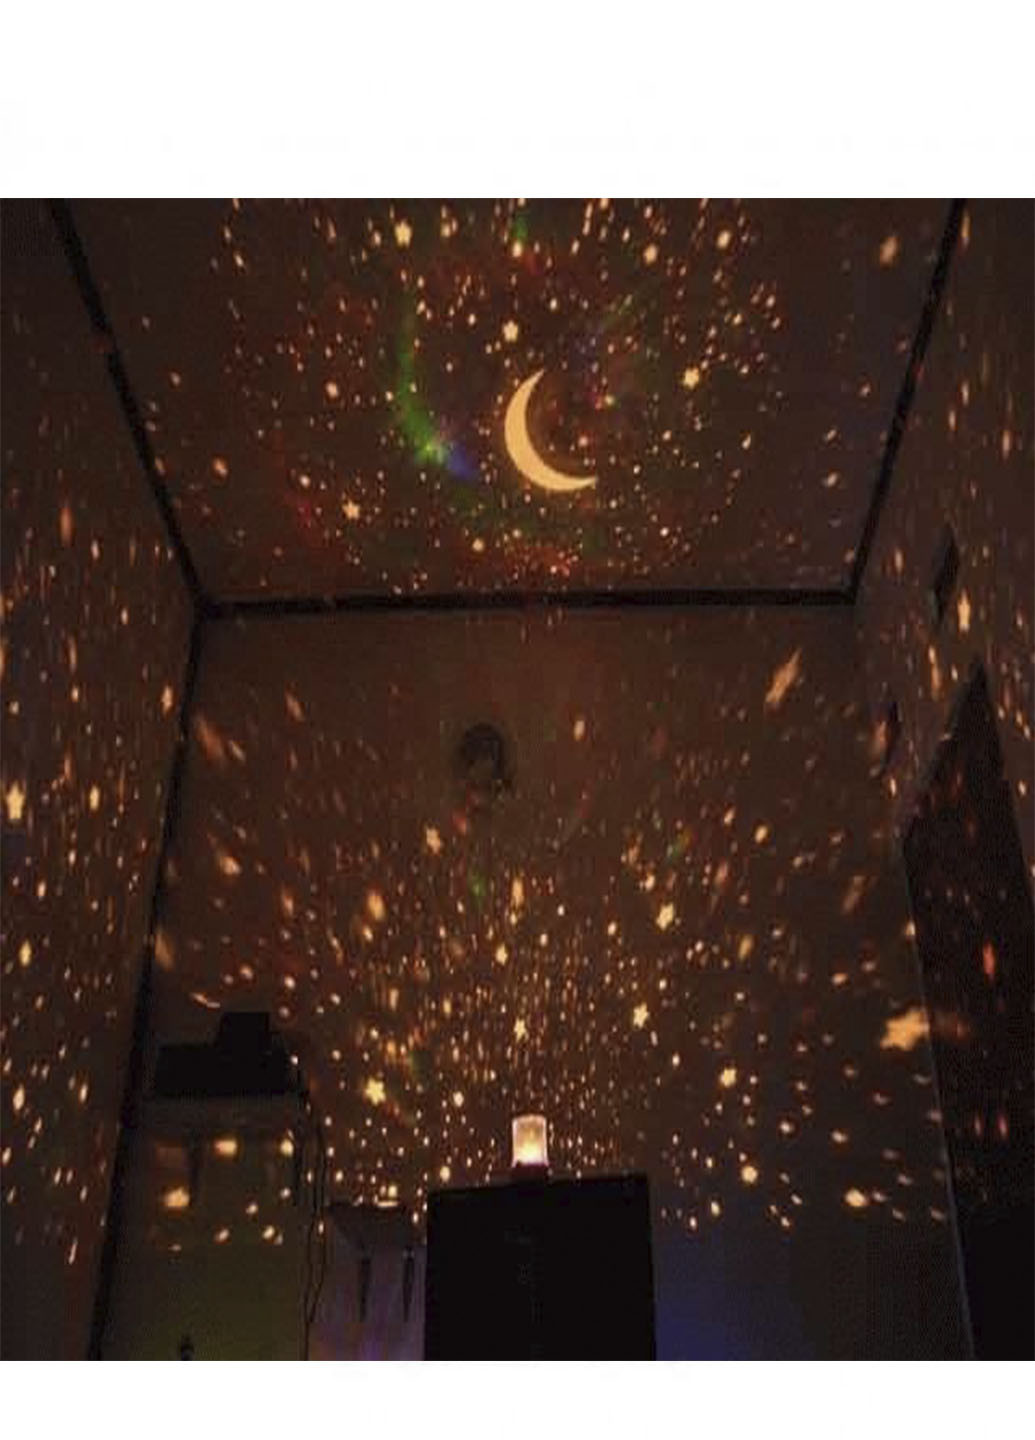 Світильник проектор нічник зоряне небо Star Master Чорний XO (241274313)